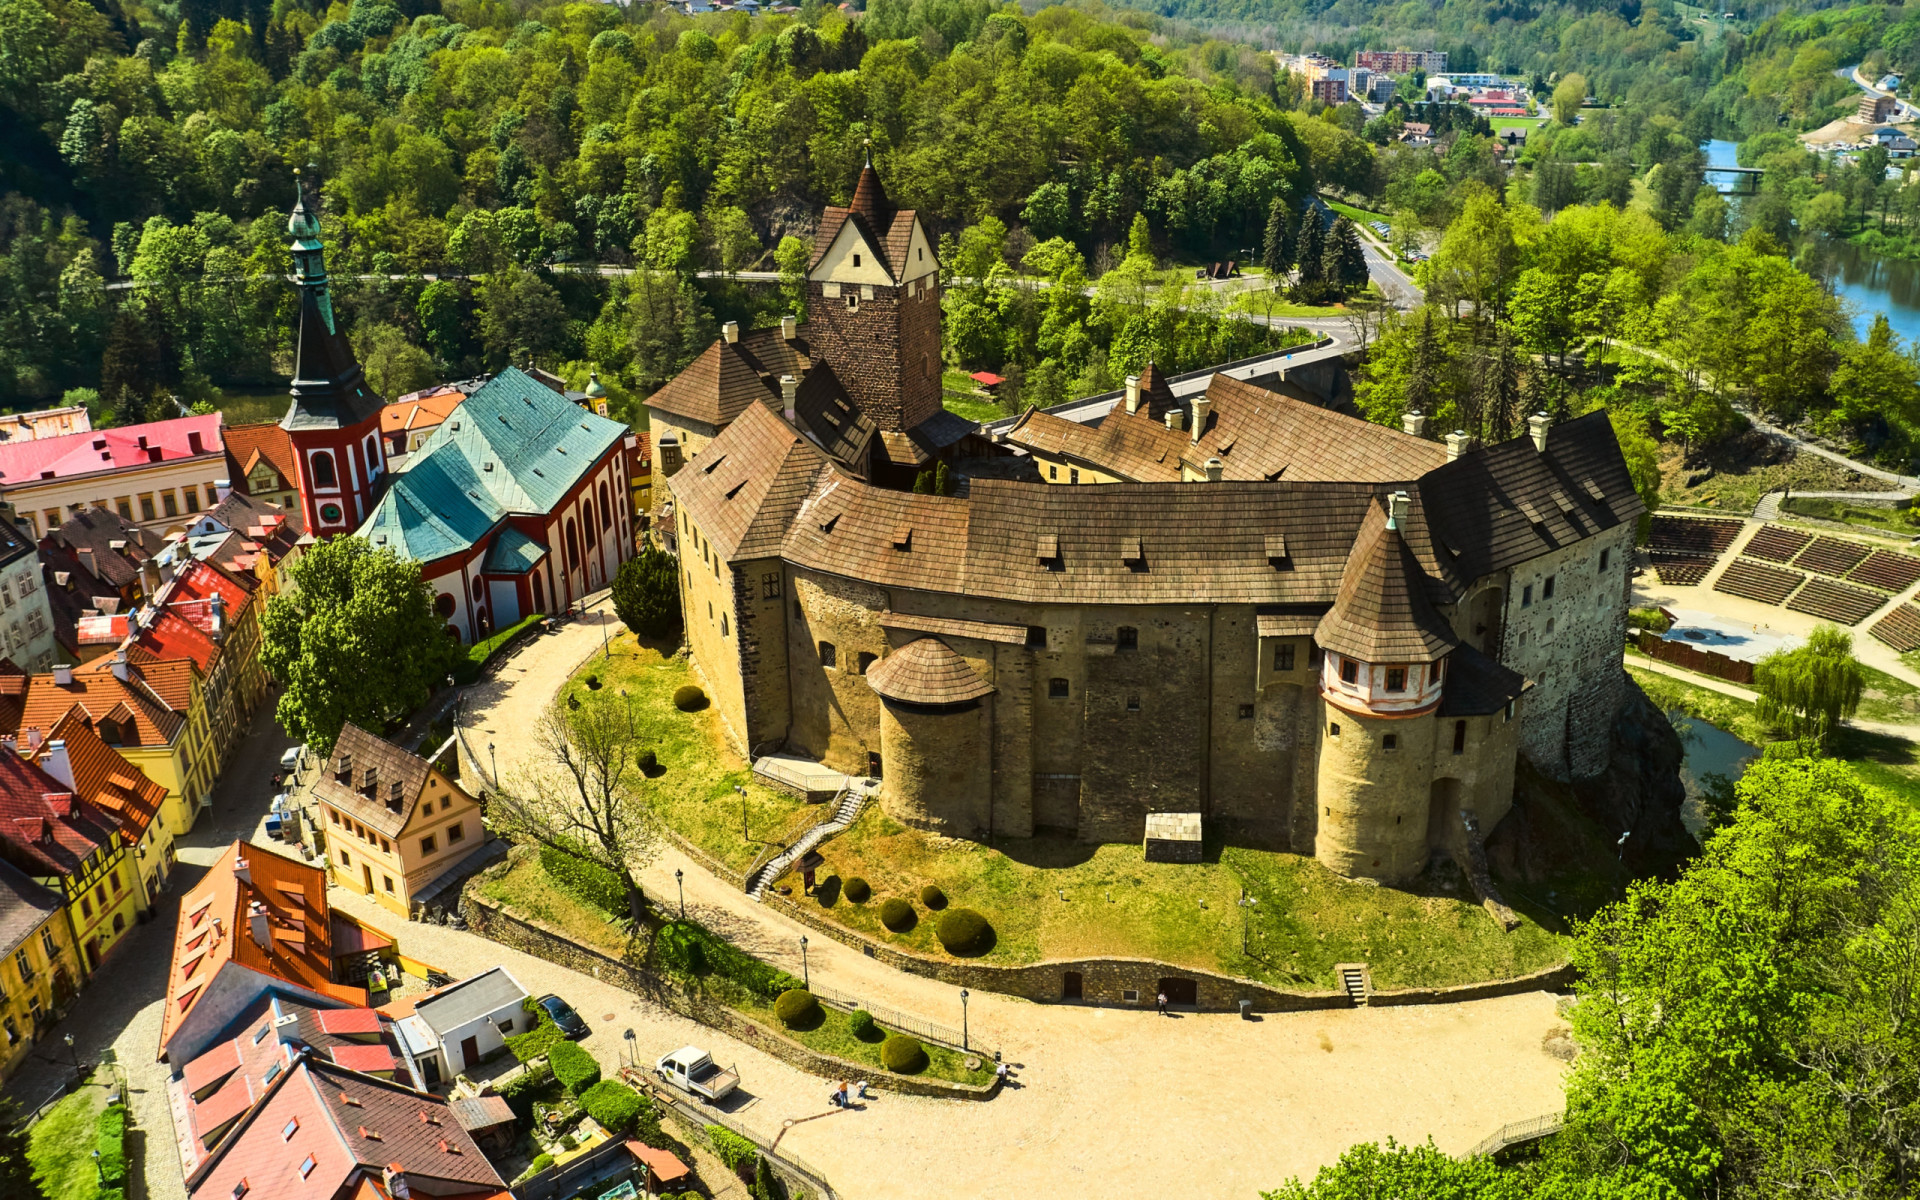 <div class="form-group itemTitle">Le château de Loket, merveille gothique du XIIe siècle, monte la garde sur cette ville pittoresque située au sommet d'une colline dans la région de Karlovy Vary, en République tchèque.</div><p><a href="https://www.msn.com/fr-fr/community/channel/vid-7xx8mnucu55yw63we9va2gwr7uihbxwc68fxqp25x6tg4ftibpra?cvid=94631541bc0f4f89bfd59158d696ad7e">Suivez-nous et accédez tous les jours à du contenu exclusif</a></p>